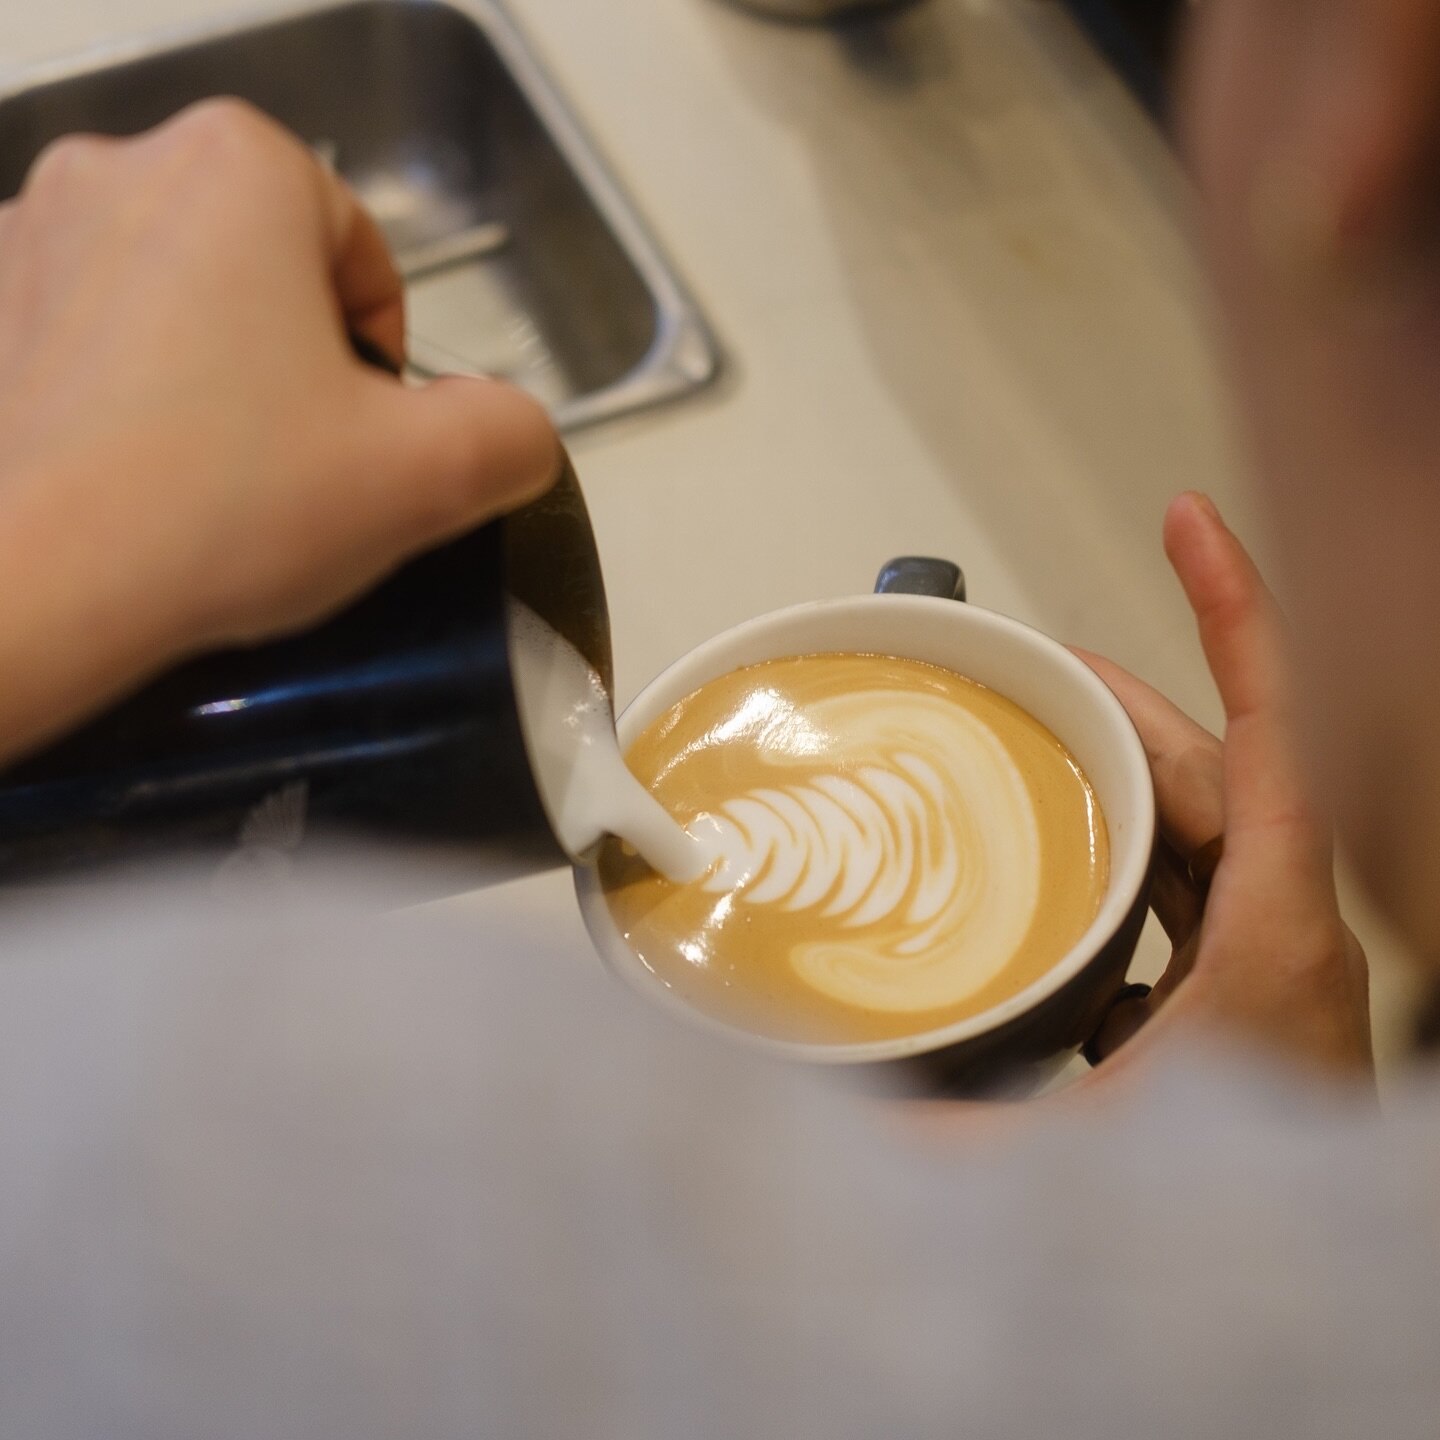 Rien de mieux qu&rsquo;un bon latte pour commencer la journ&eacute;e. Pis on s&rsquo;applique toujours pour faire le plus beau latte art 🤌🏼
.
.
#lafincamtl #caf&eacute; #coffee #montreal #mtl #specialtycoffee #latteart #latte #lafincamtl